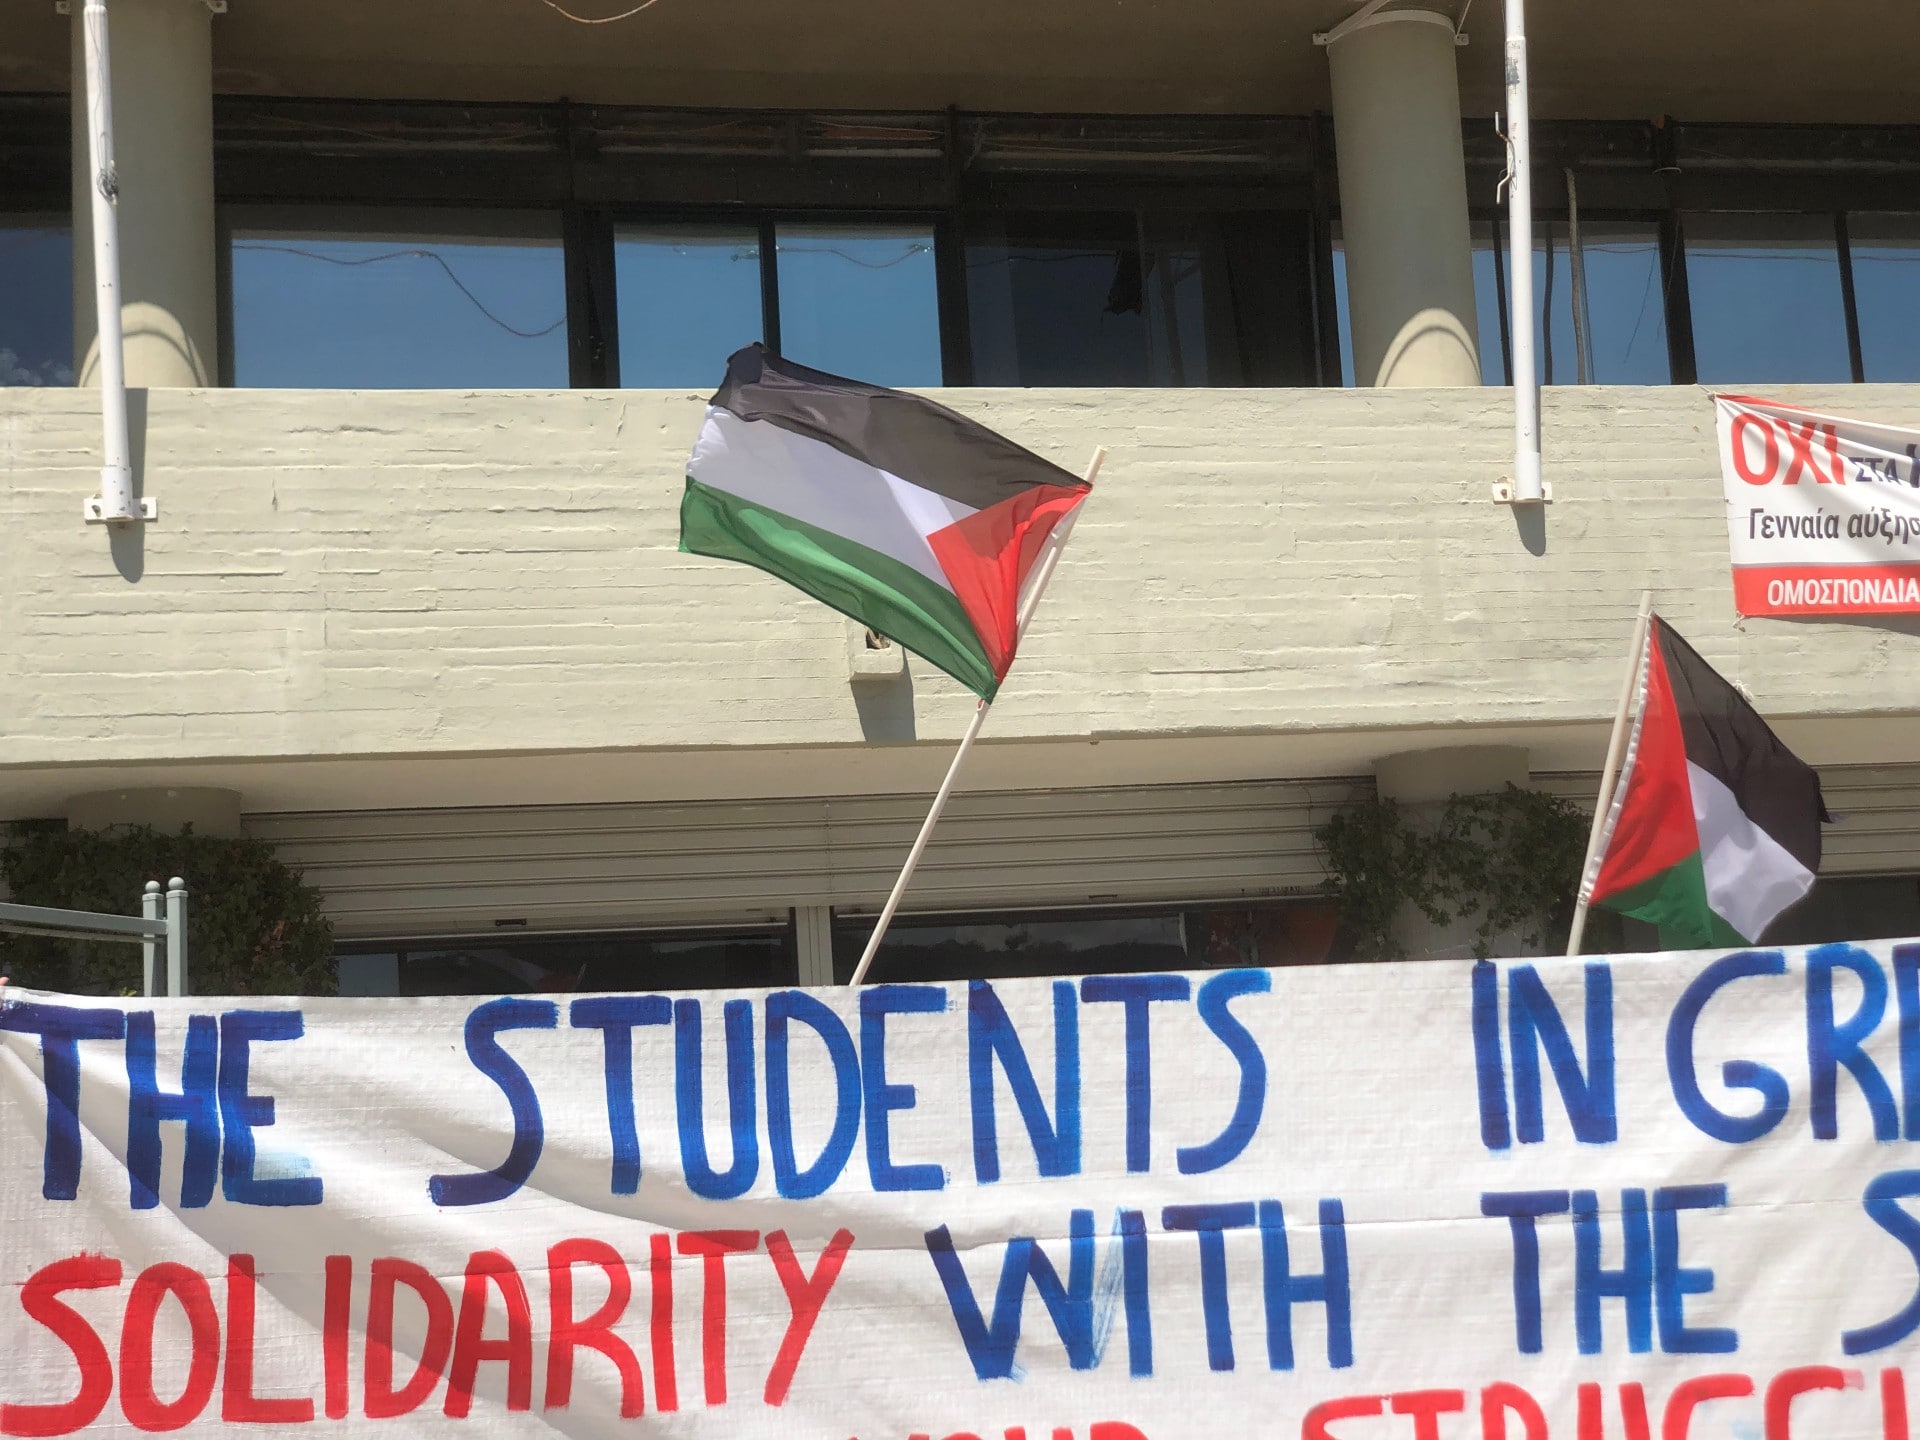 Φοιτητές του ΑΠΘ στηρίζουν τις διαμαρτυρίες-καταλήψεις των συμφοιτητών τους σε Columbia, στο Yale